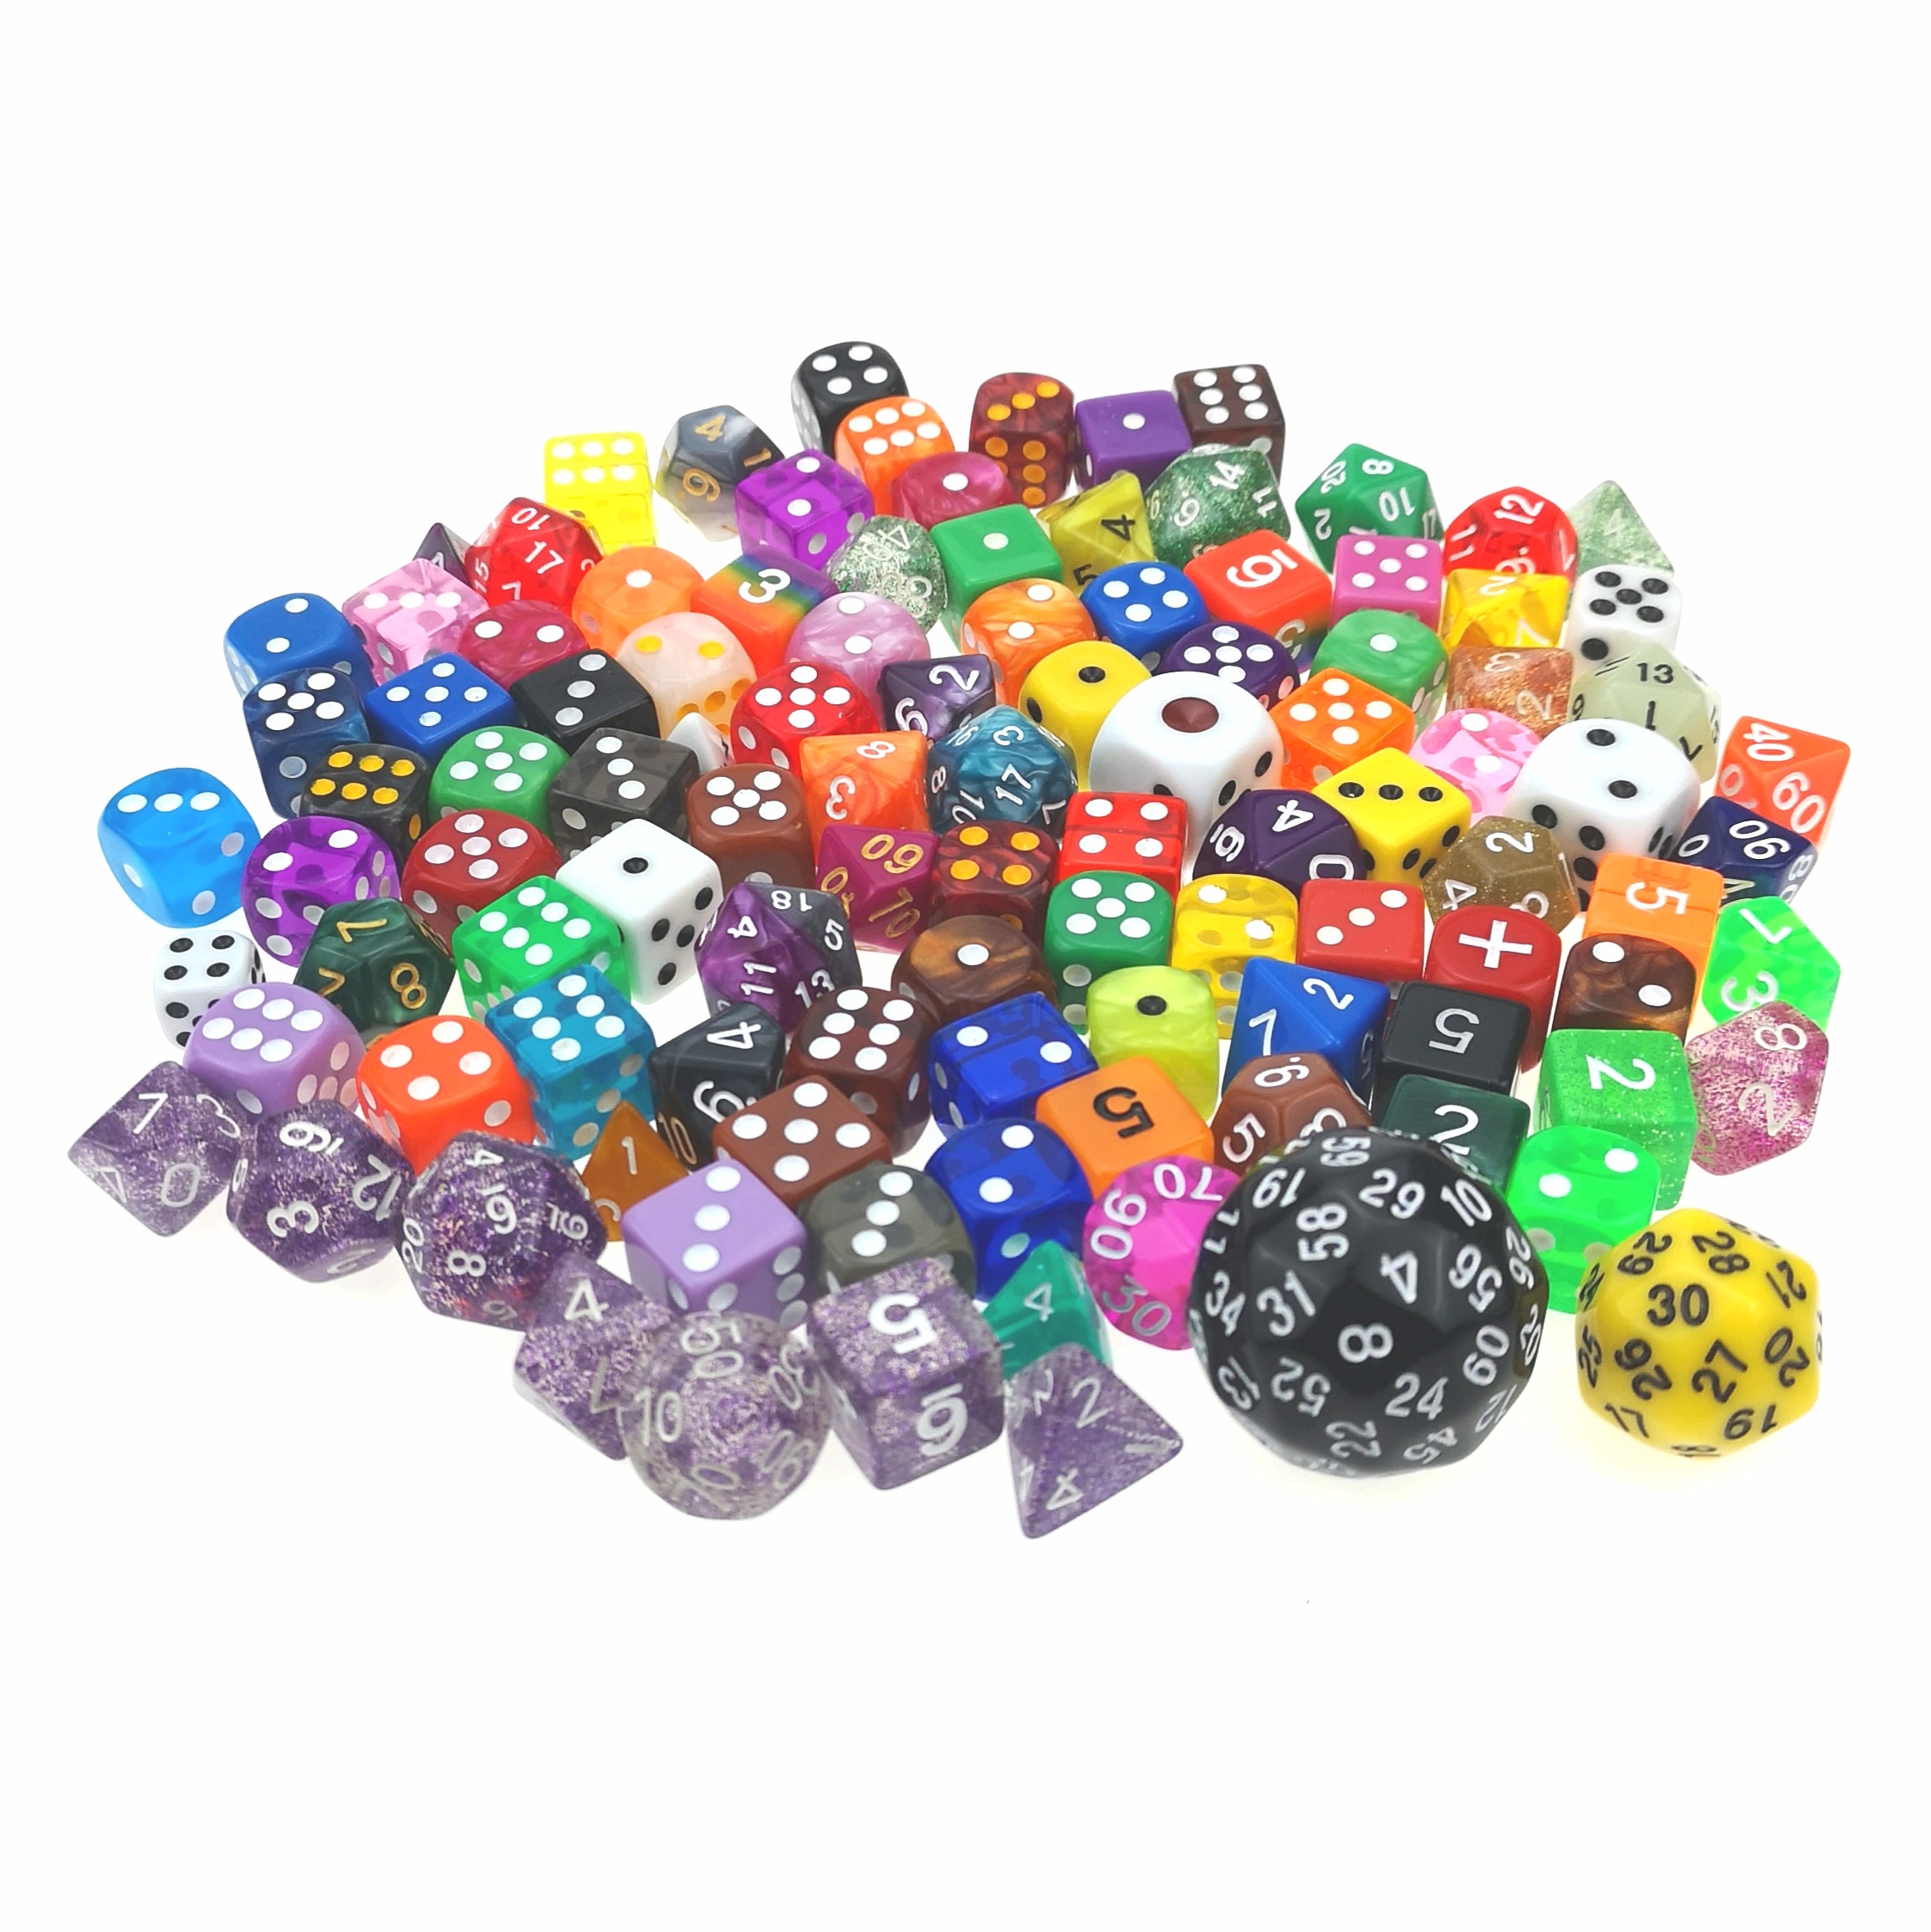 Rollooo Multi Kleur Bulk Dobbelstenen 100 pcs Pak van Willekeurige Veelkleurige Polyhedral Plastic met Meerdere Vormen